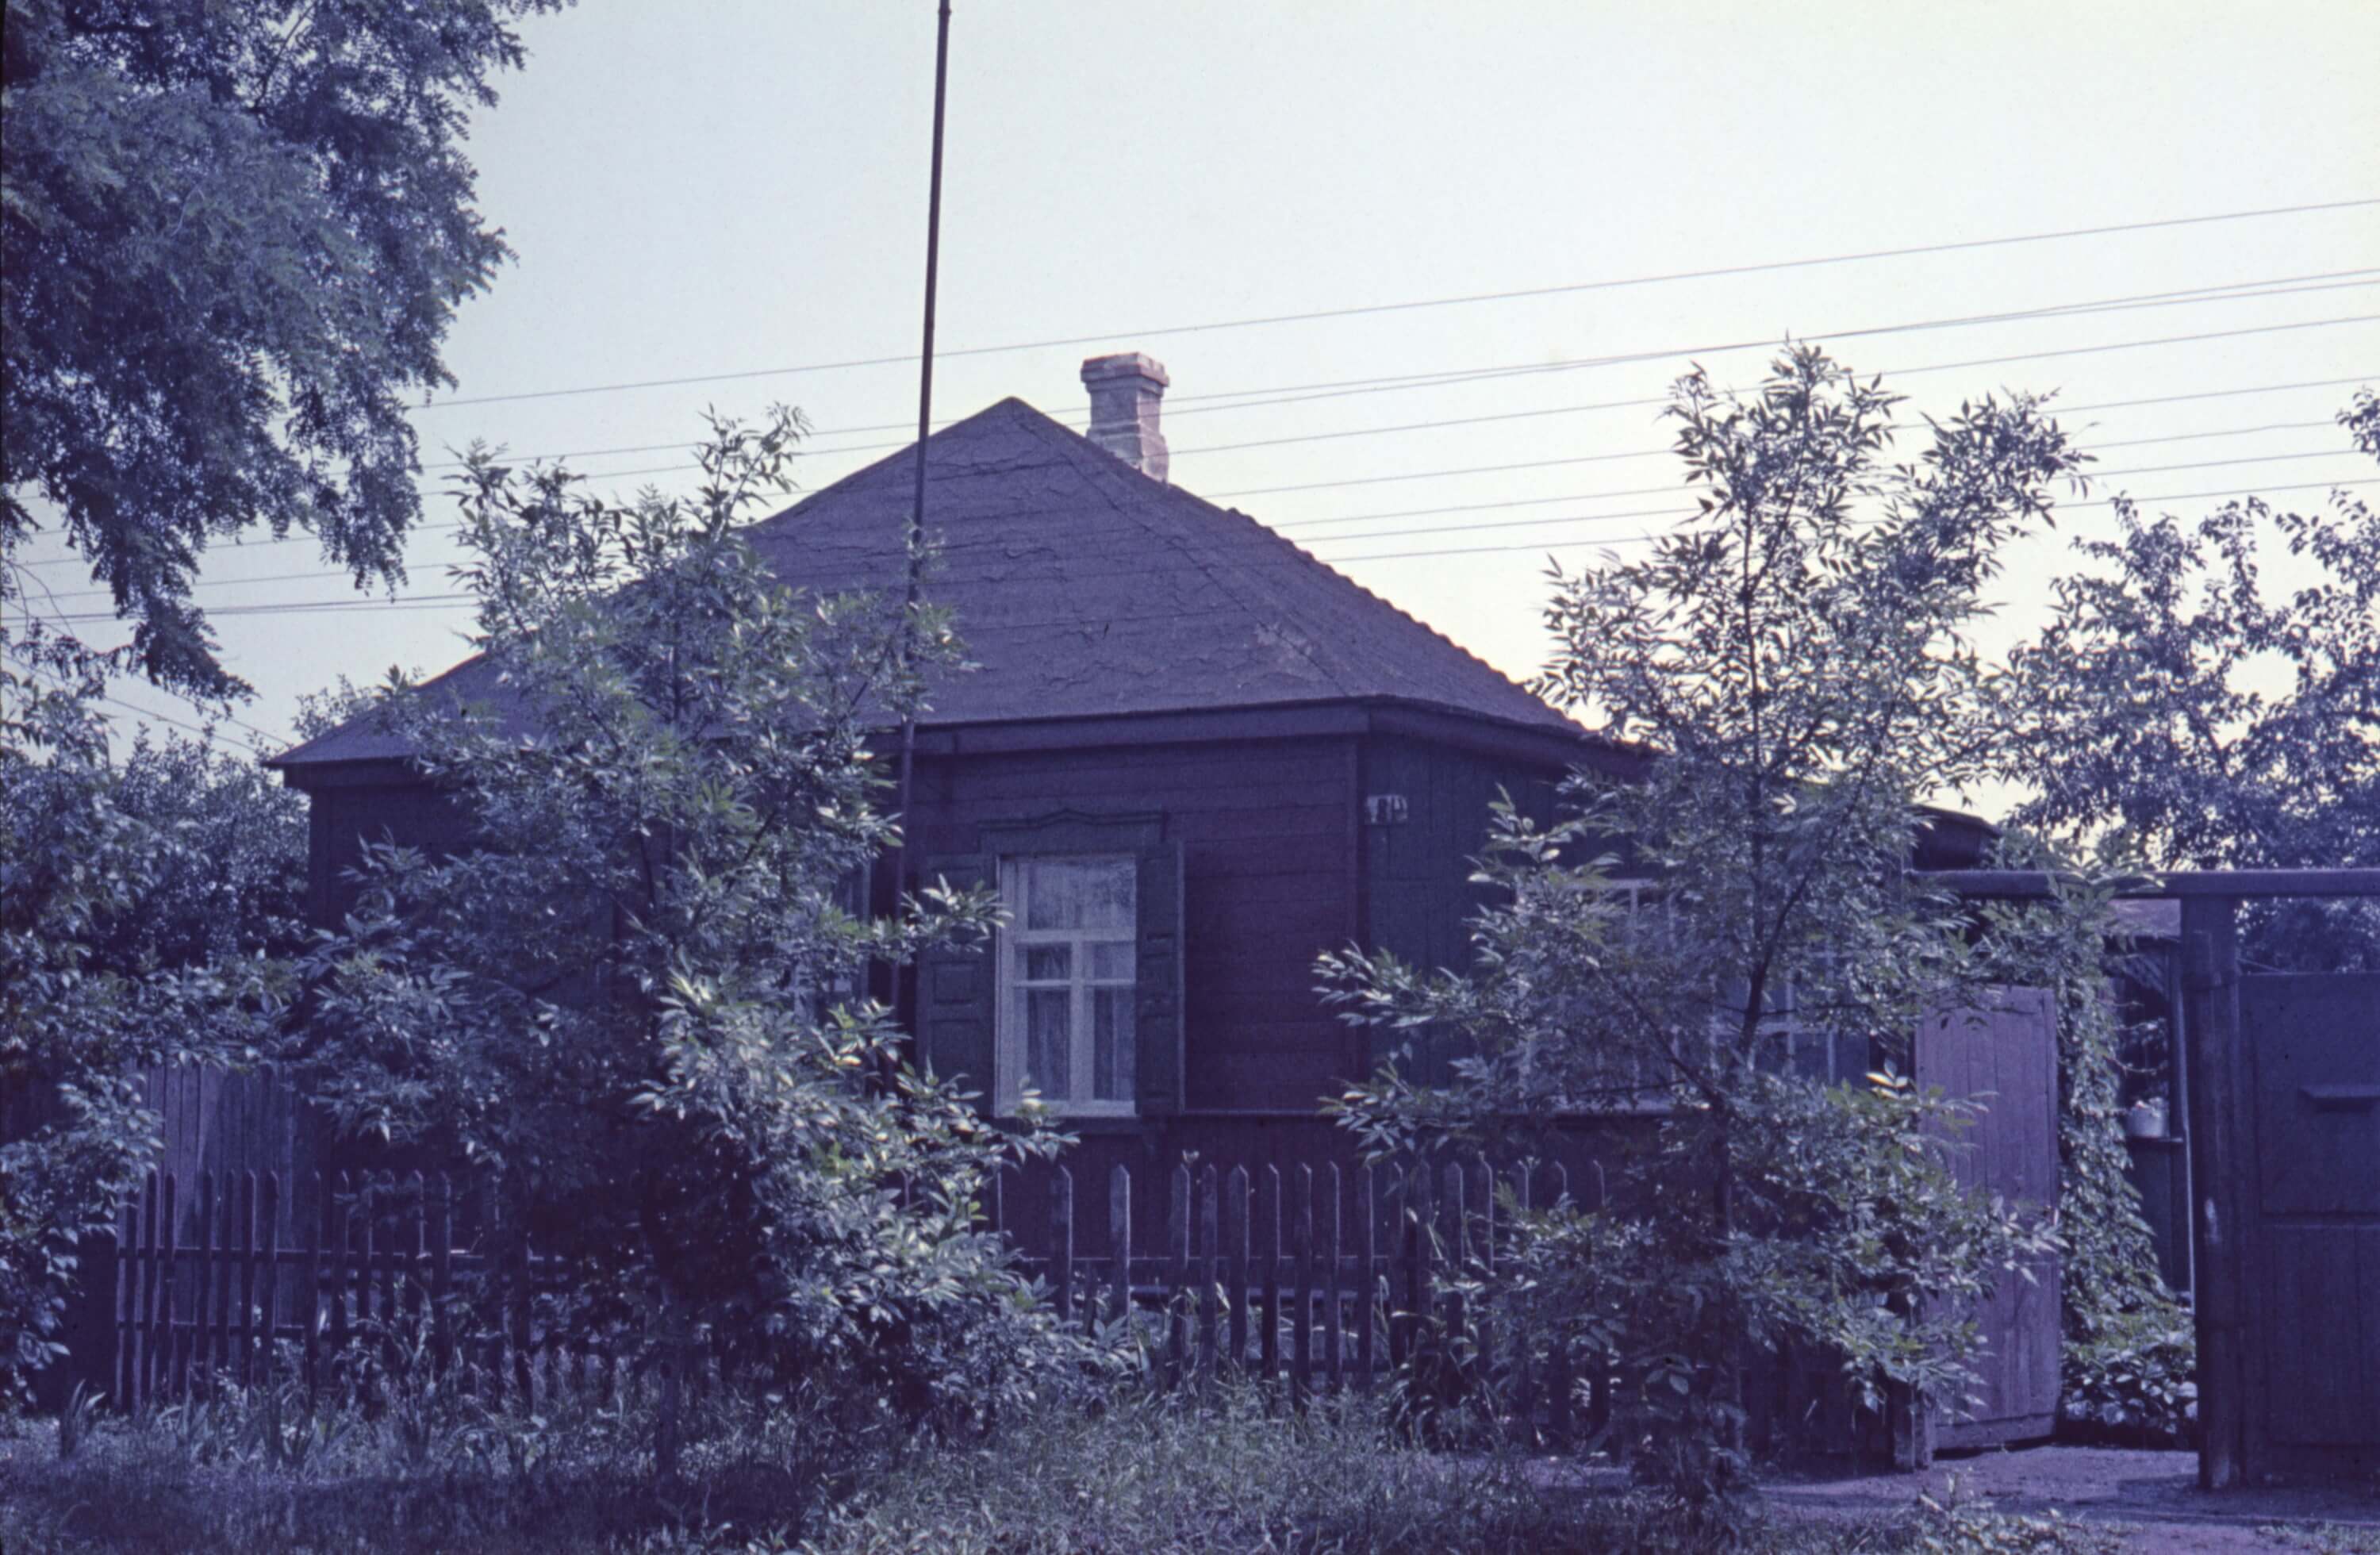 Сімейний будинок, Дебальцеве, 1970-ті роки